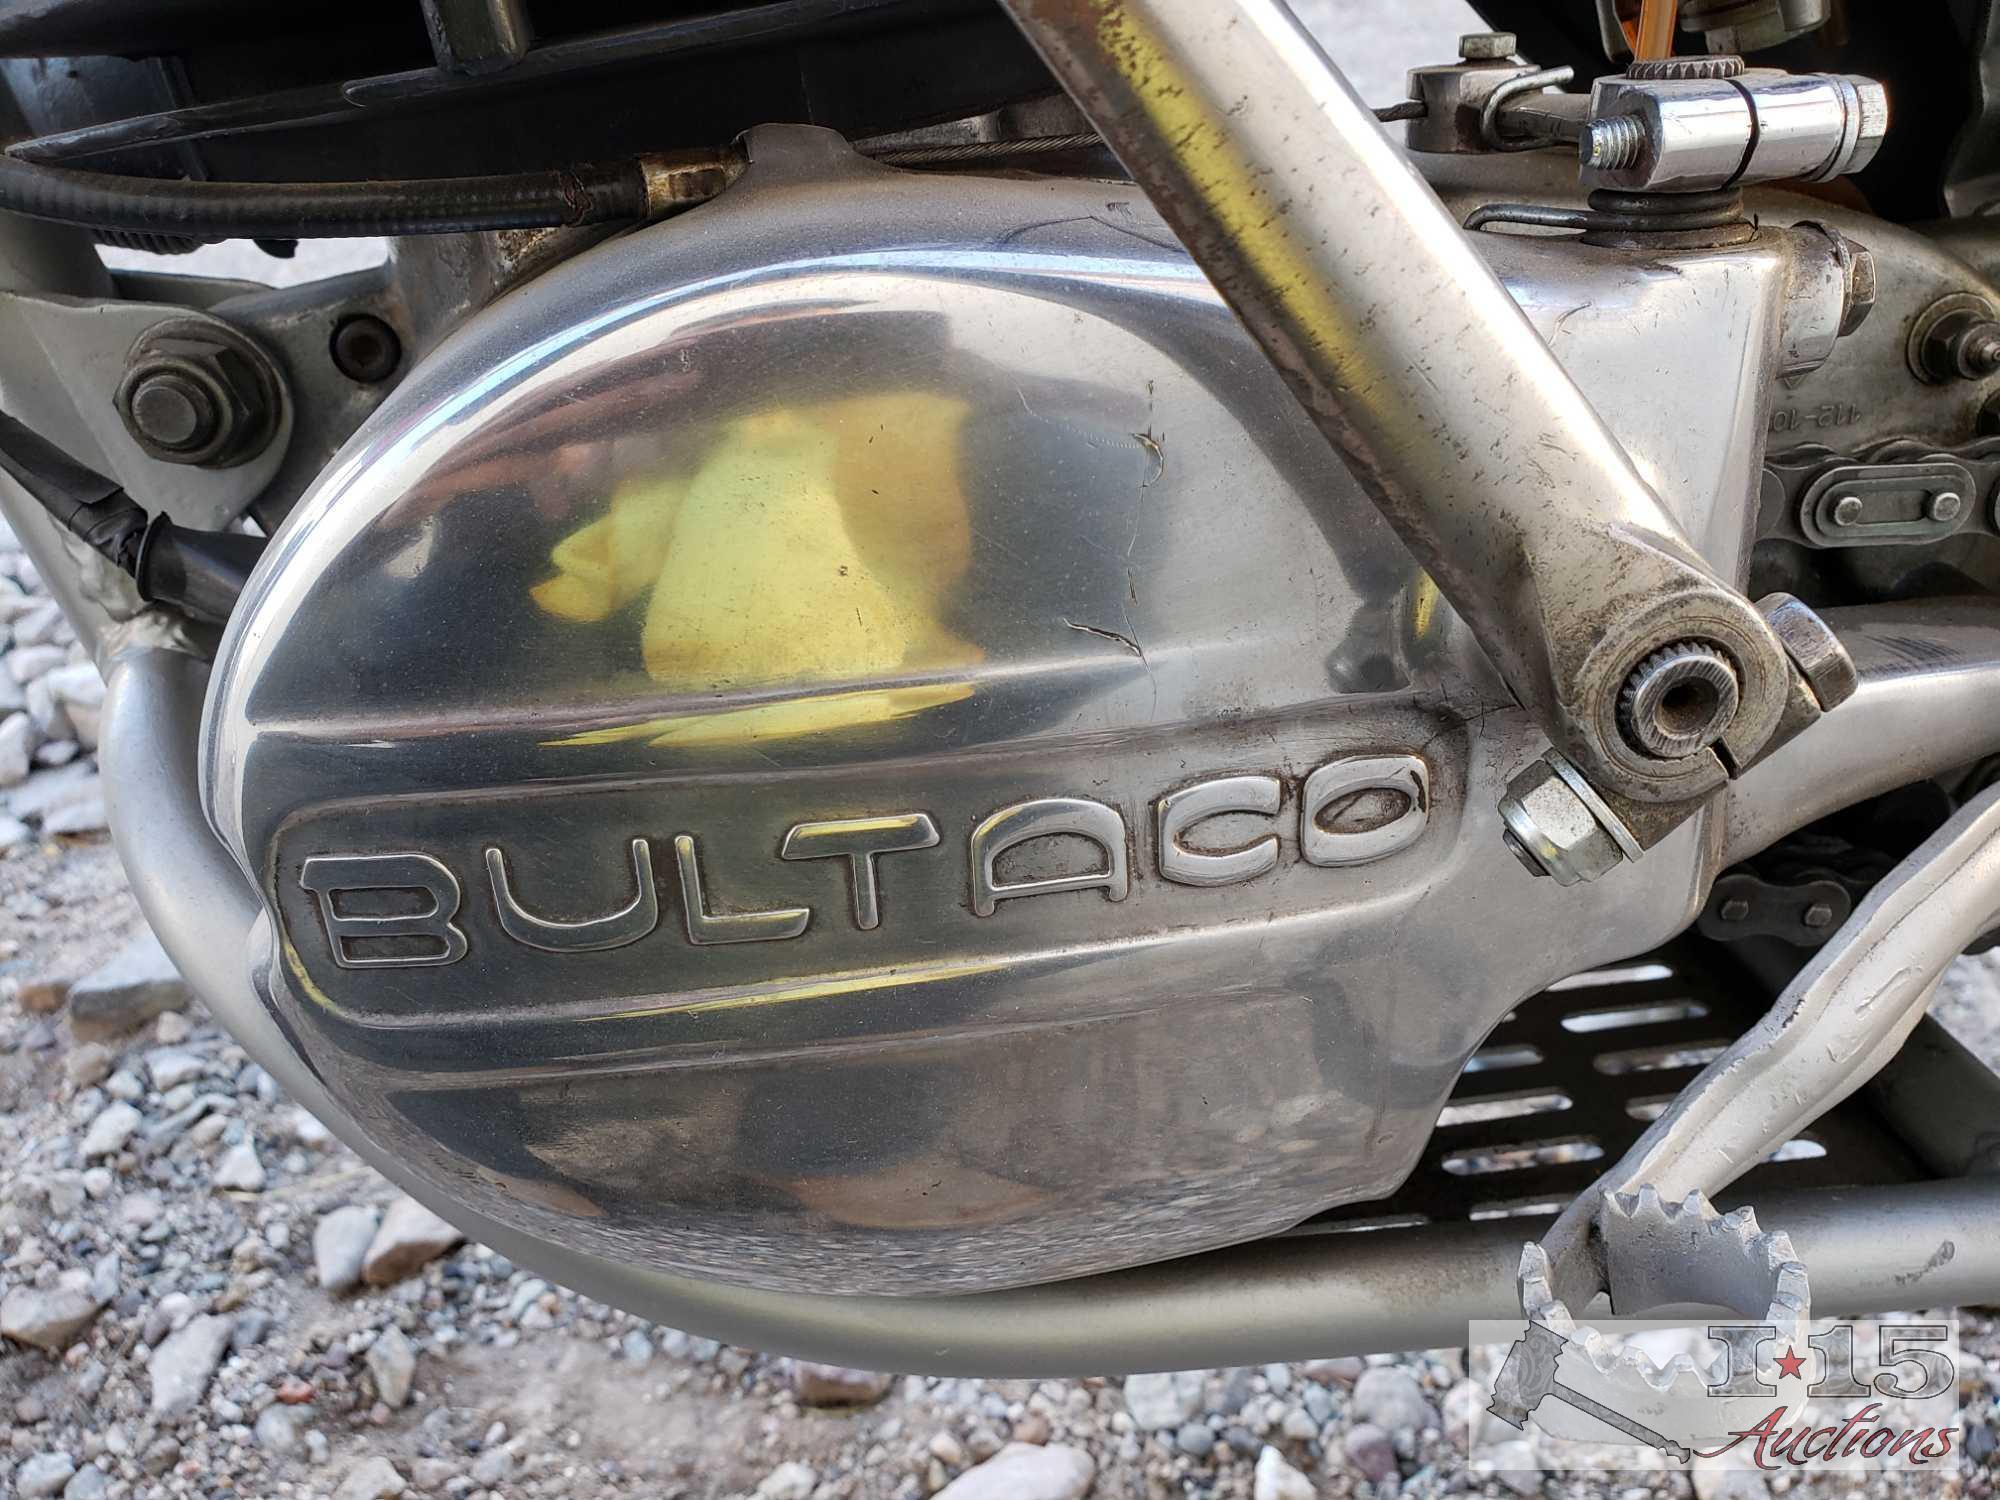 1976 Bultaco